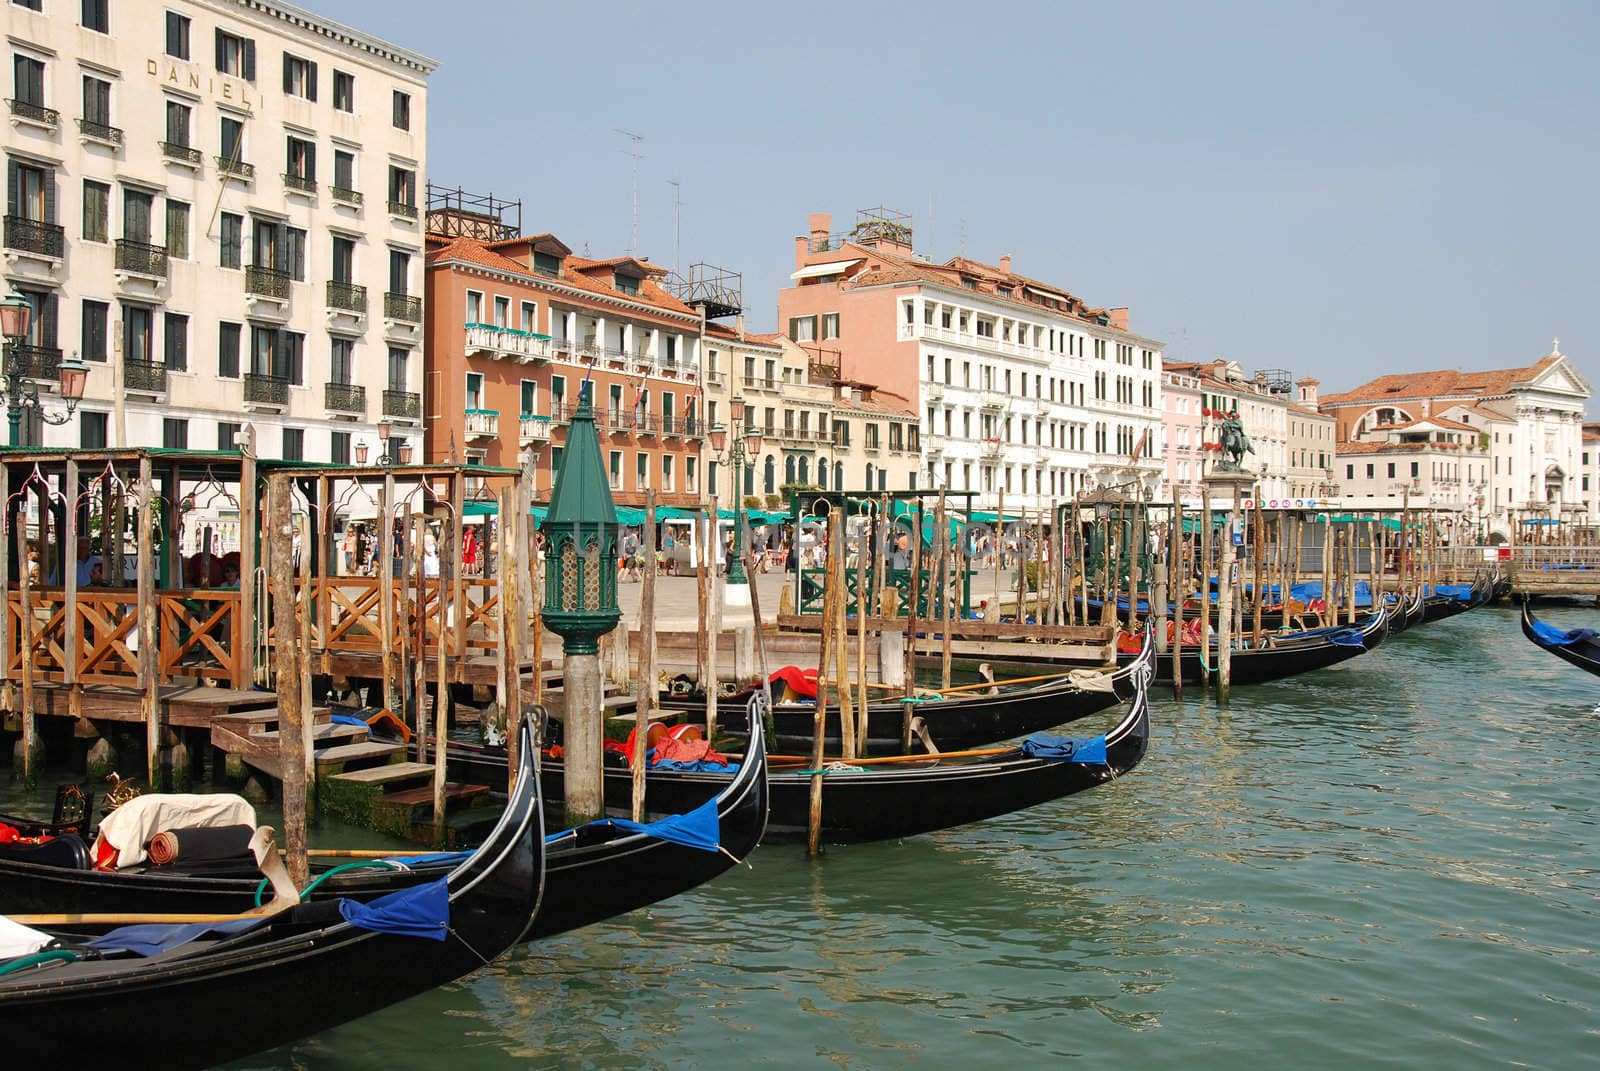 Gondolas in Venice near San-Marco square